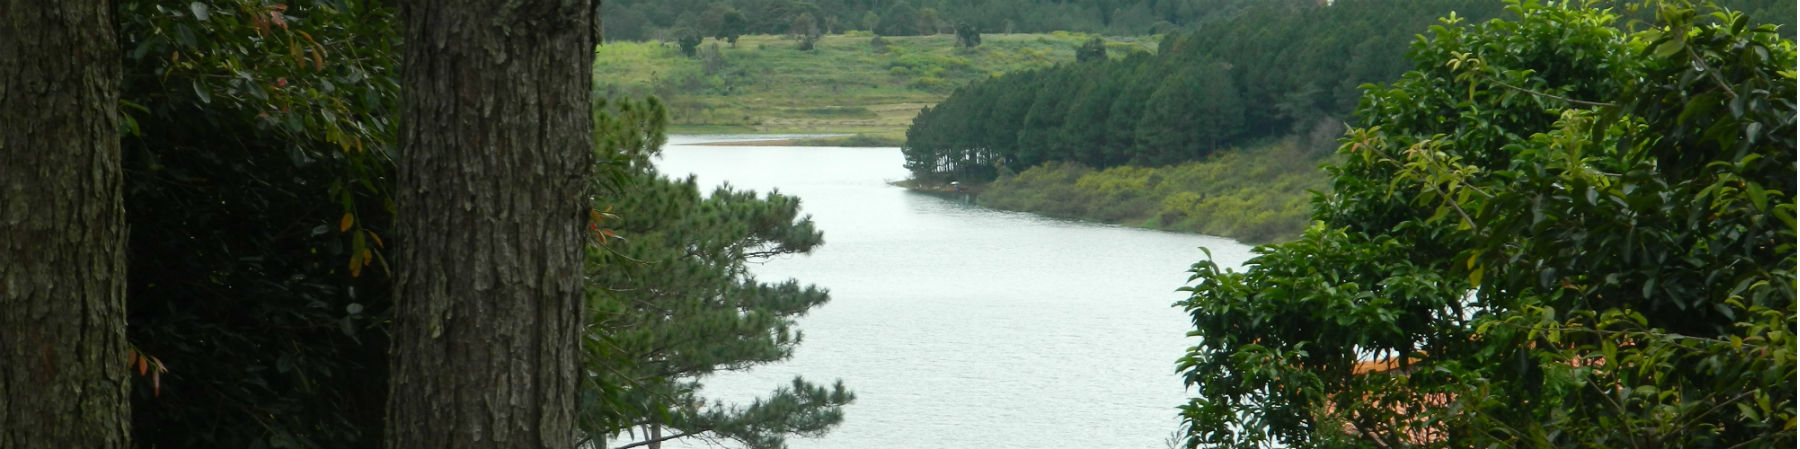 Tuyen Lam lake, Lam Dong Province